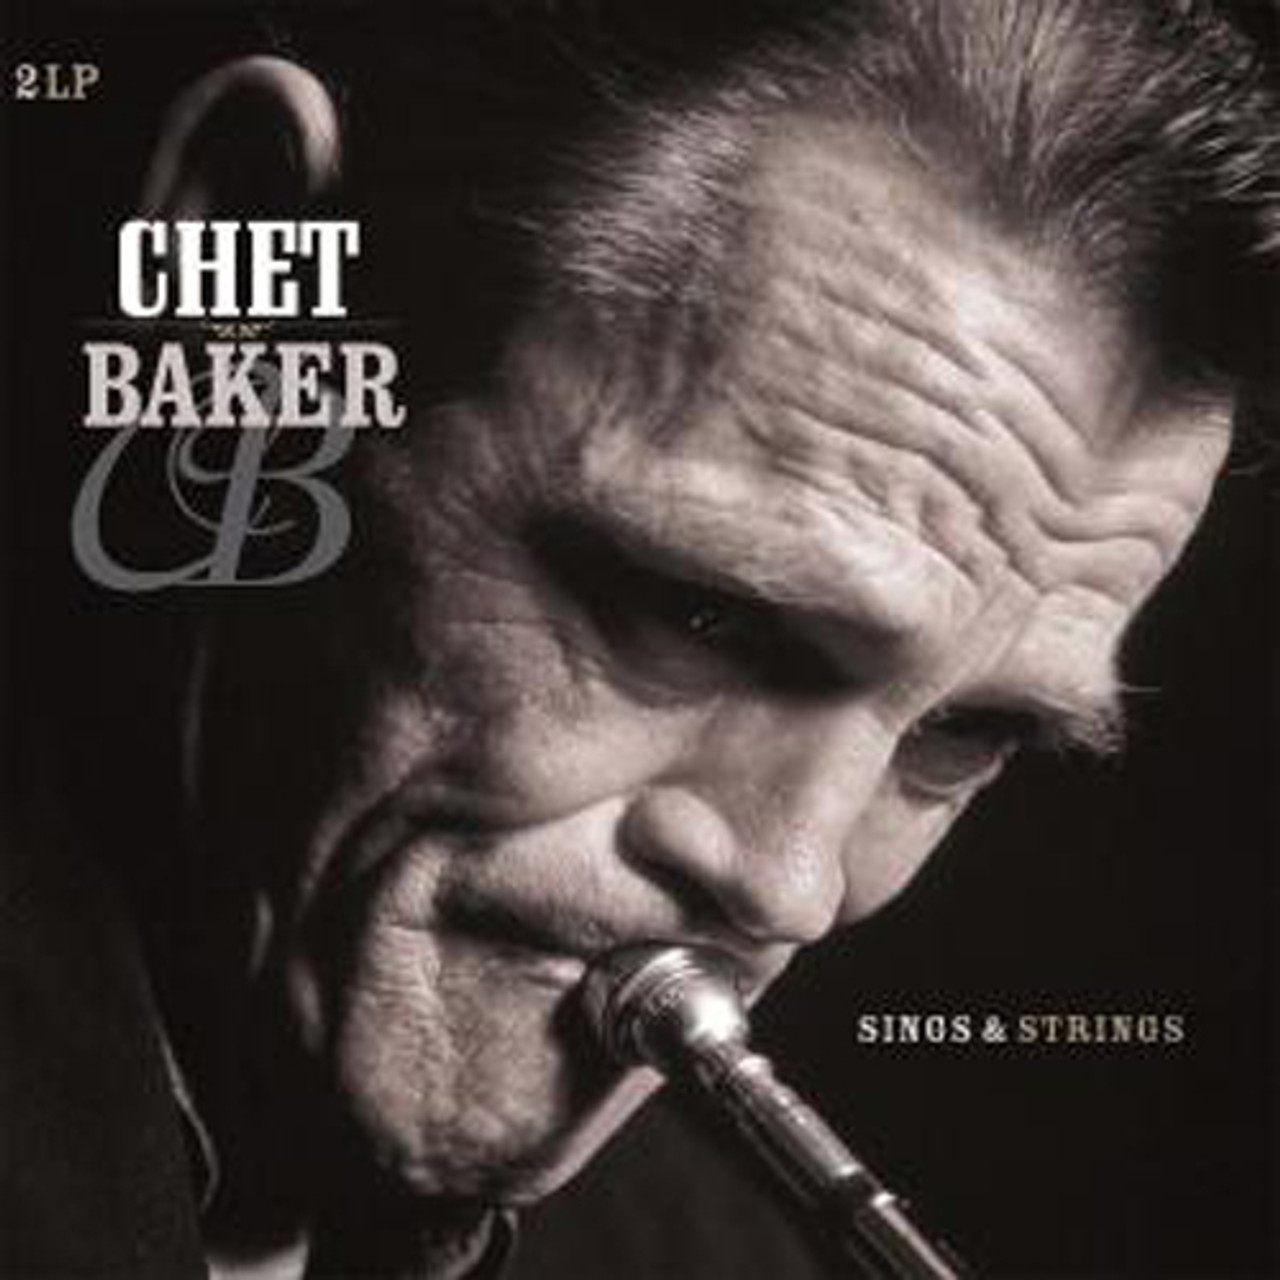 Chet Baker Sings & Strings DMM 180g Import 2LP